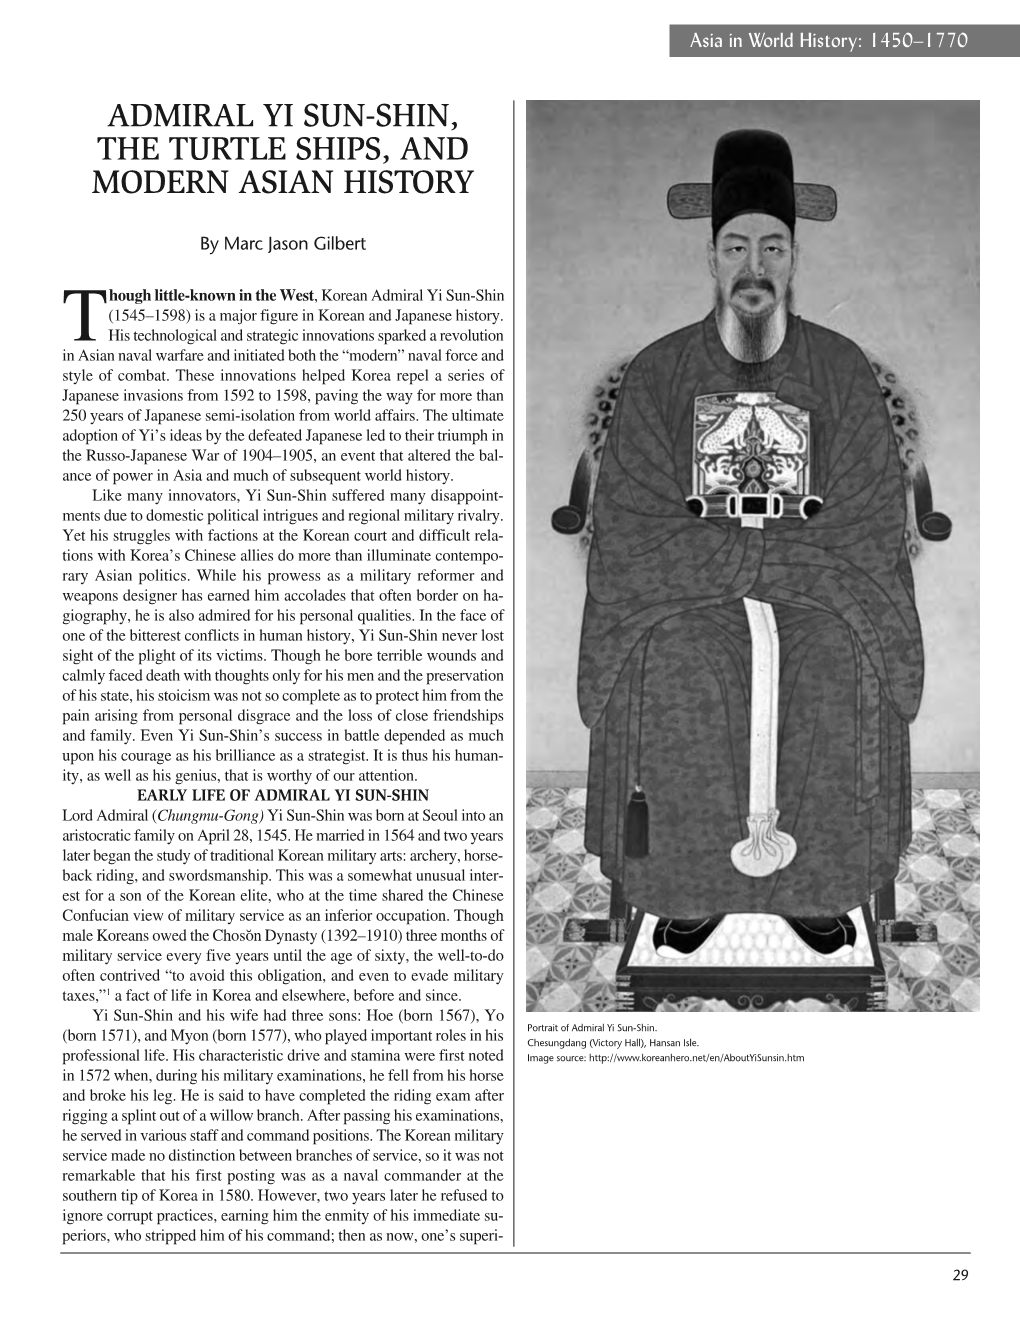 Admiral Yi Sun–Shin, the Turtle Ships, and Modern Asian History